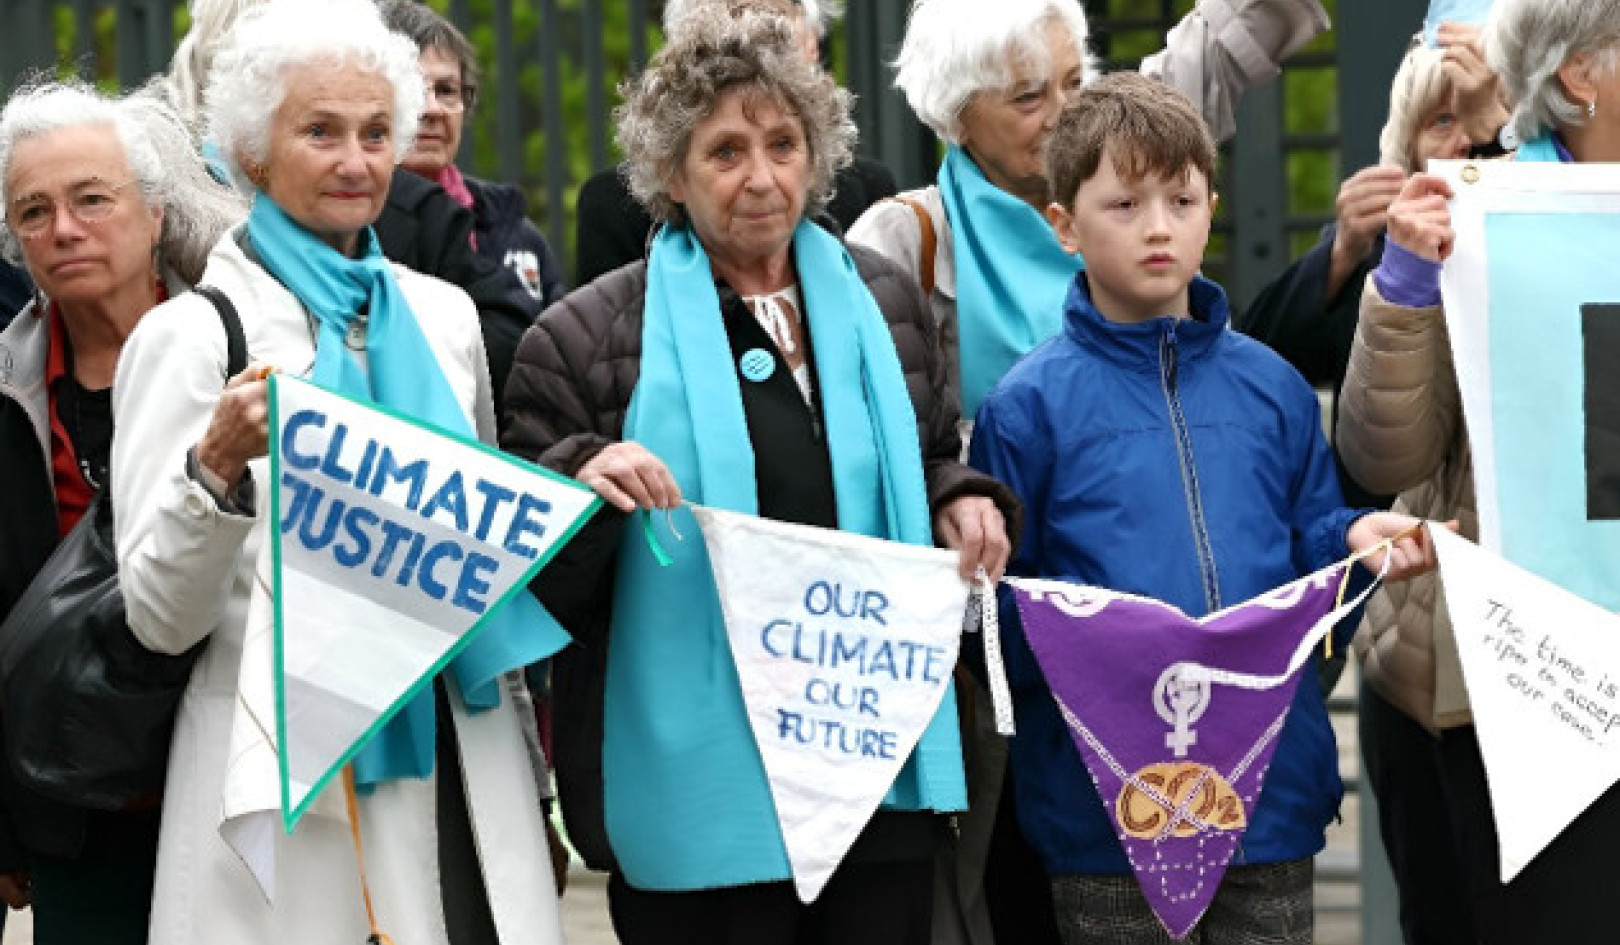 Le donne svizzere stabiliscono un precedente storico nella battaglia legale contro il cambiamento climatico